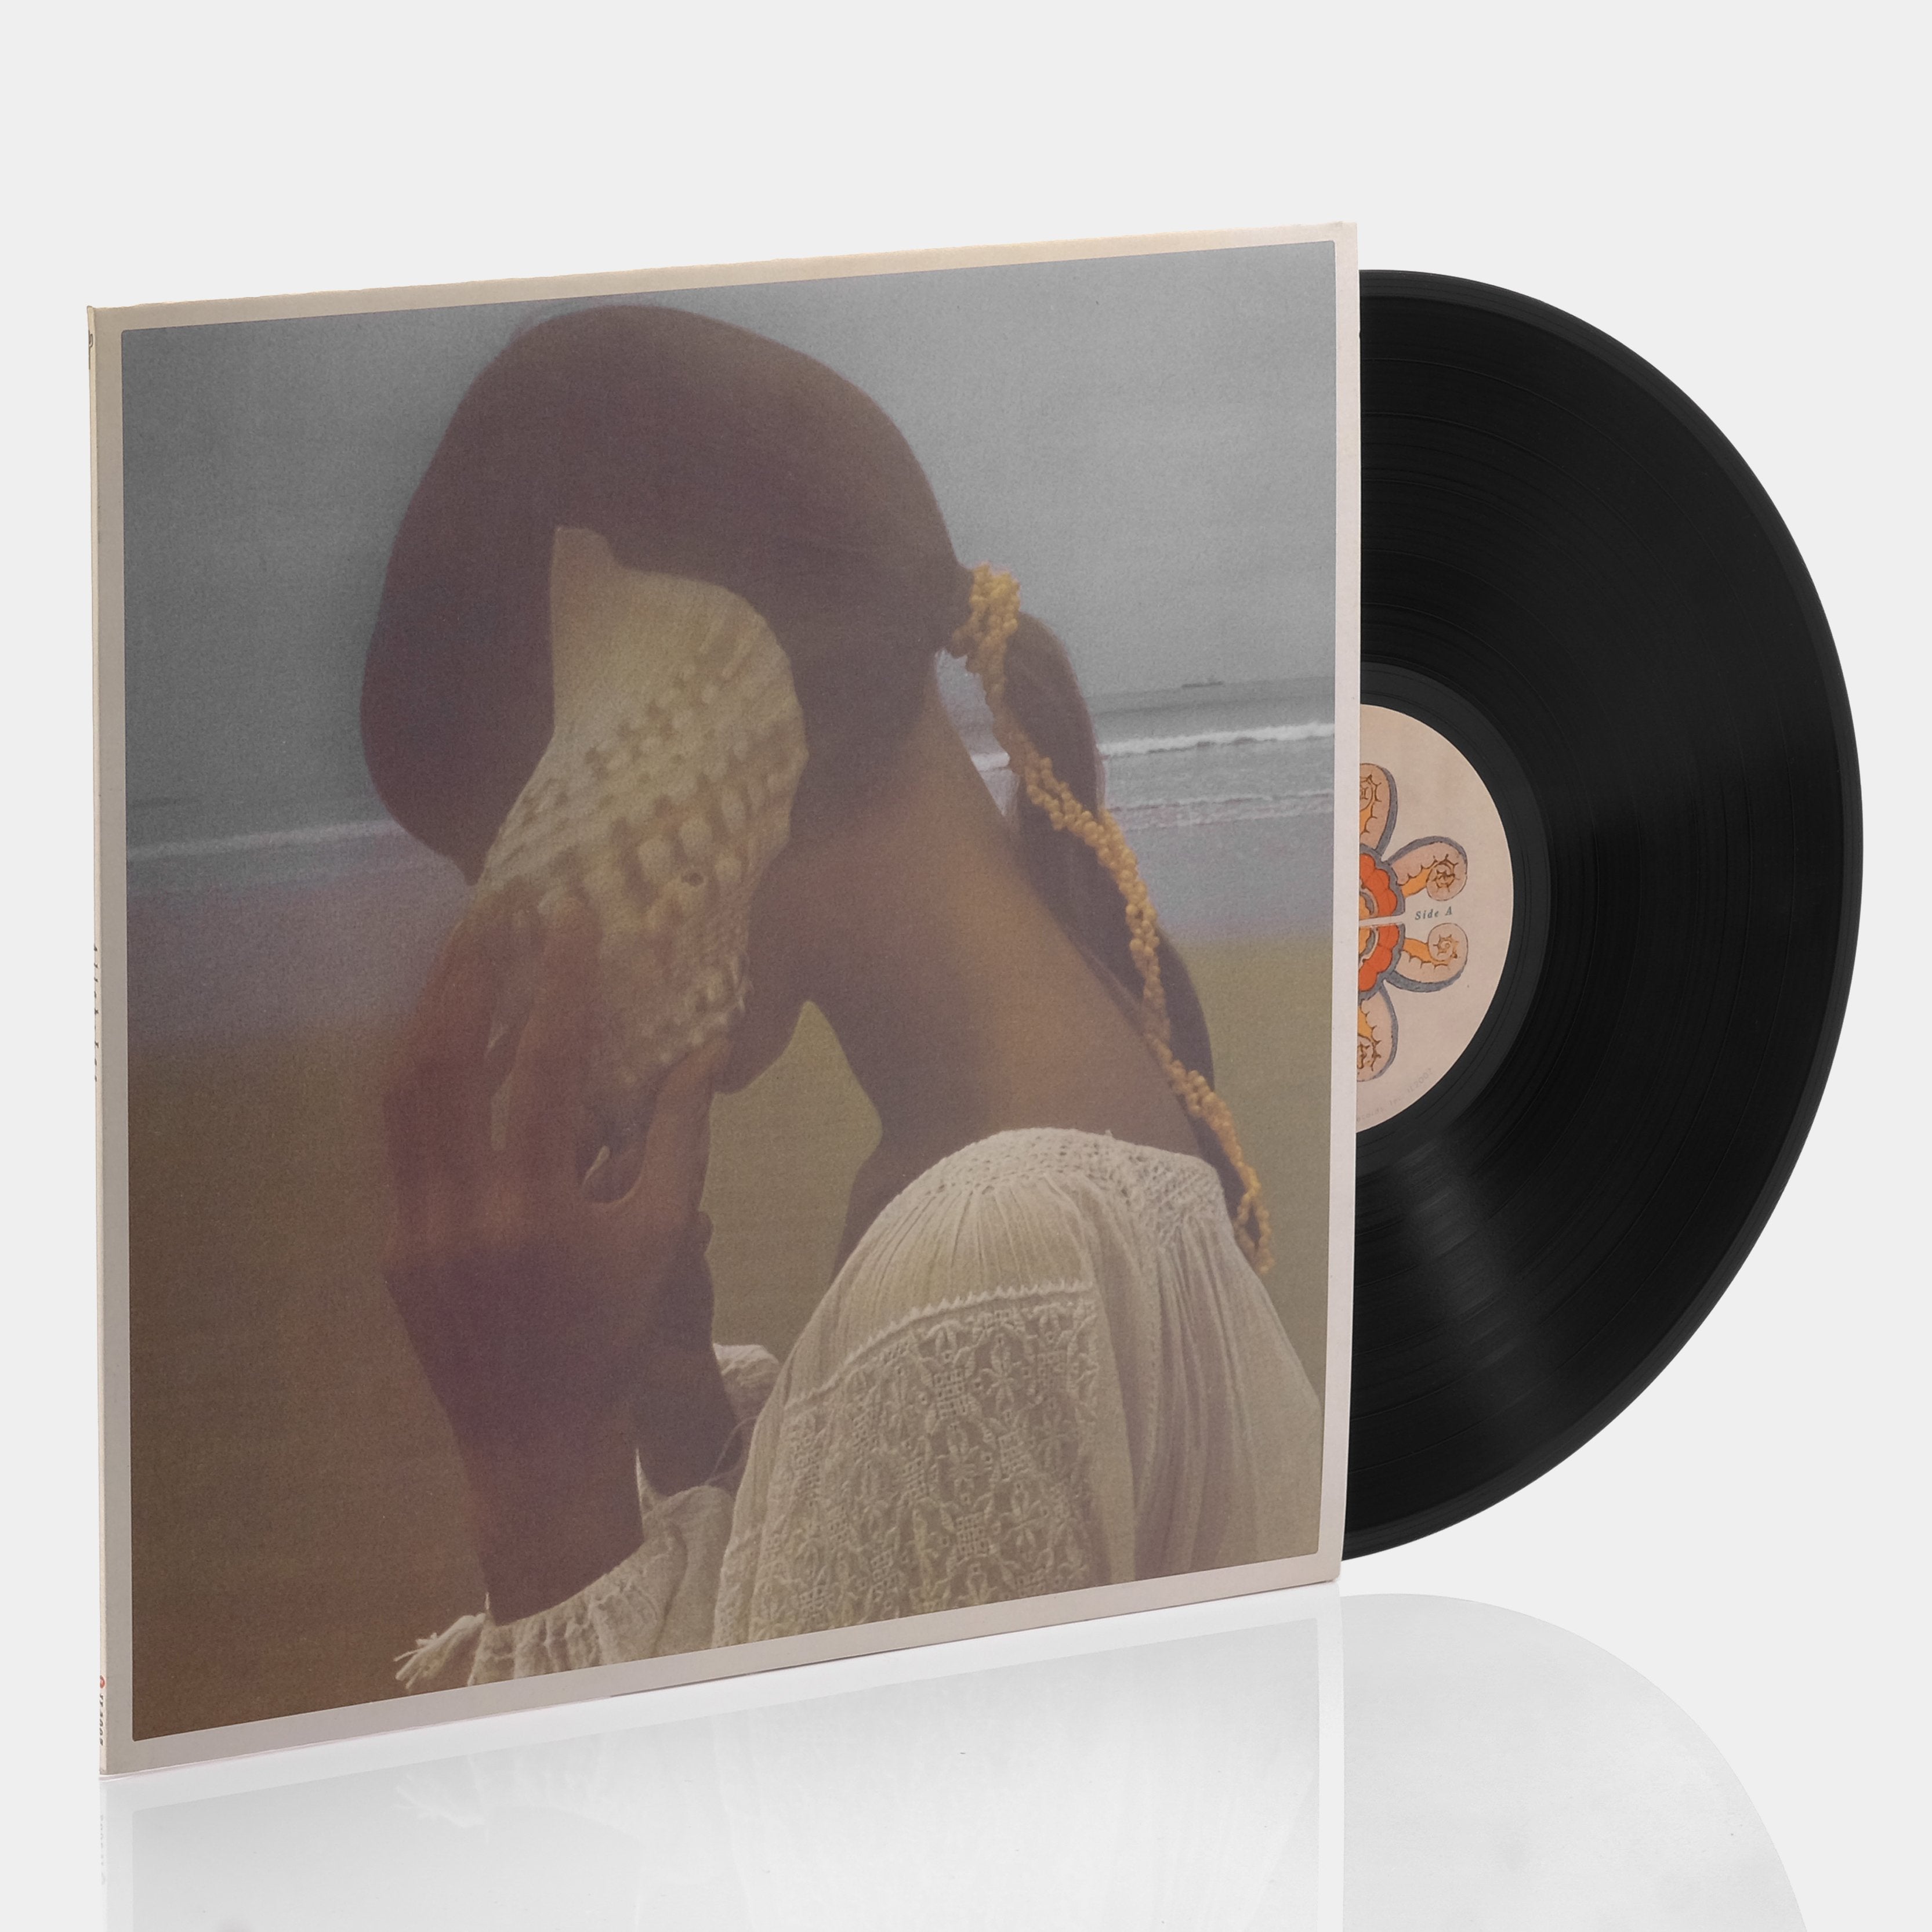 Allah-Las - Allah-Las LP Vinyl Record